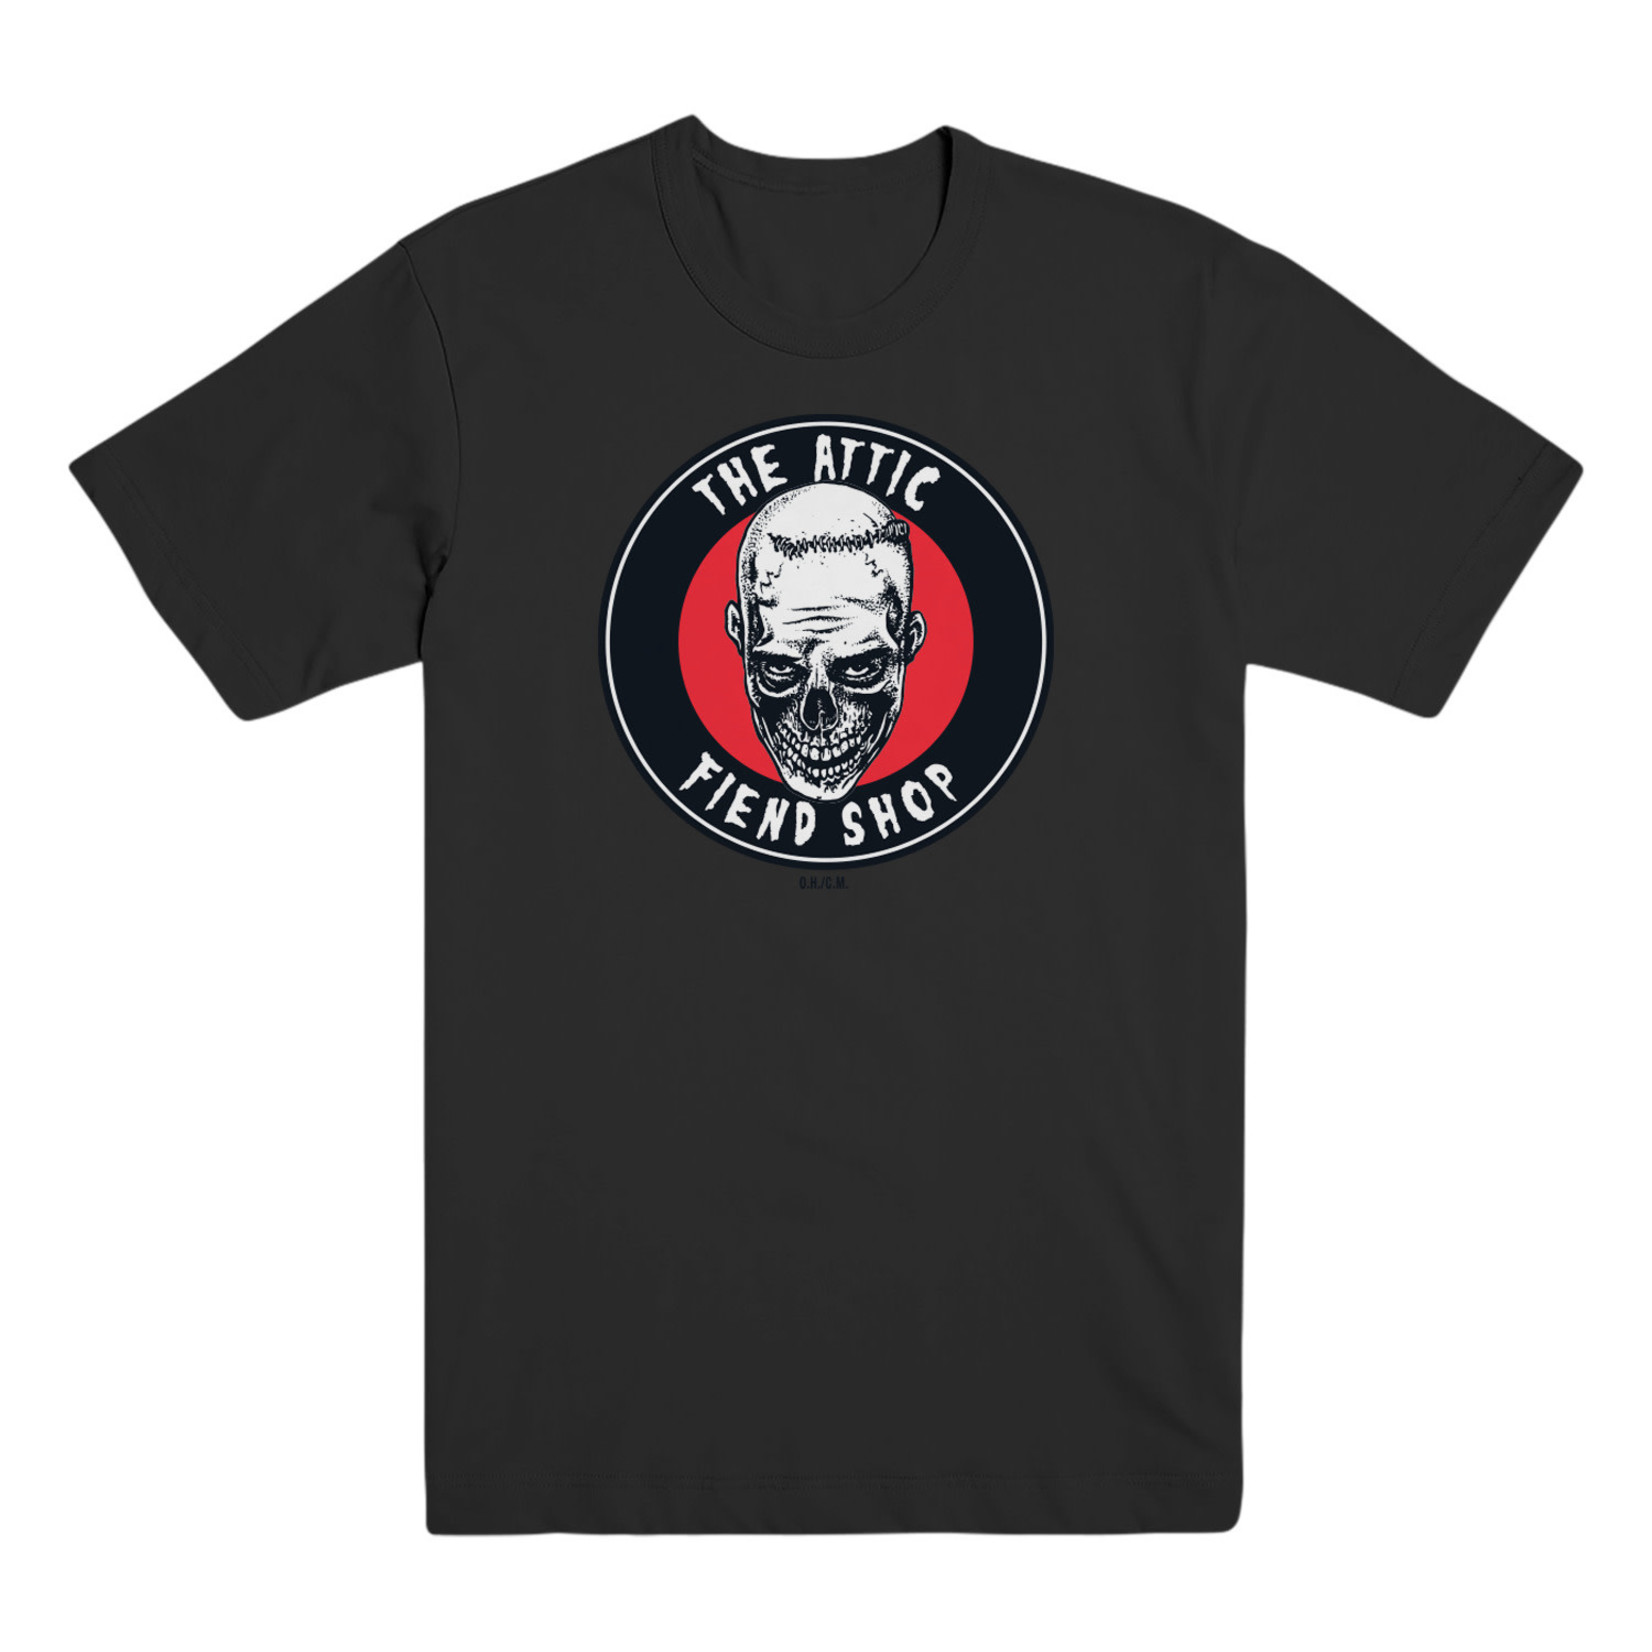 ATTIC Attic Fiend Shop T-Shirt - Black -